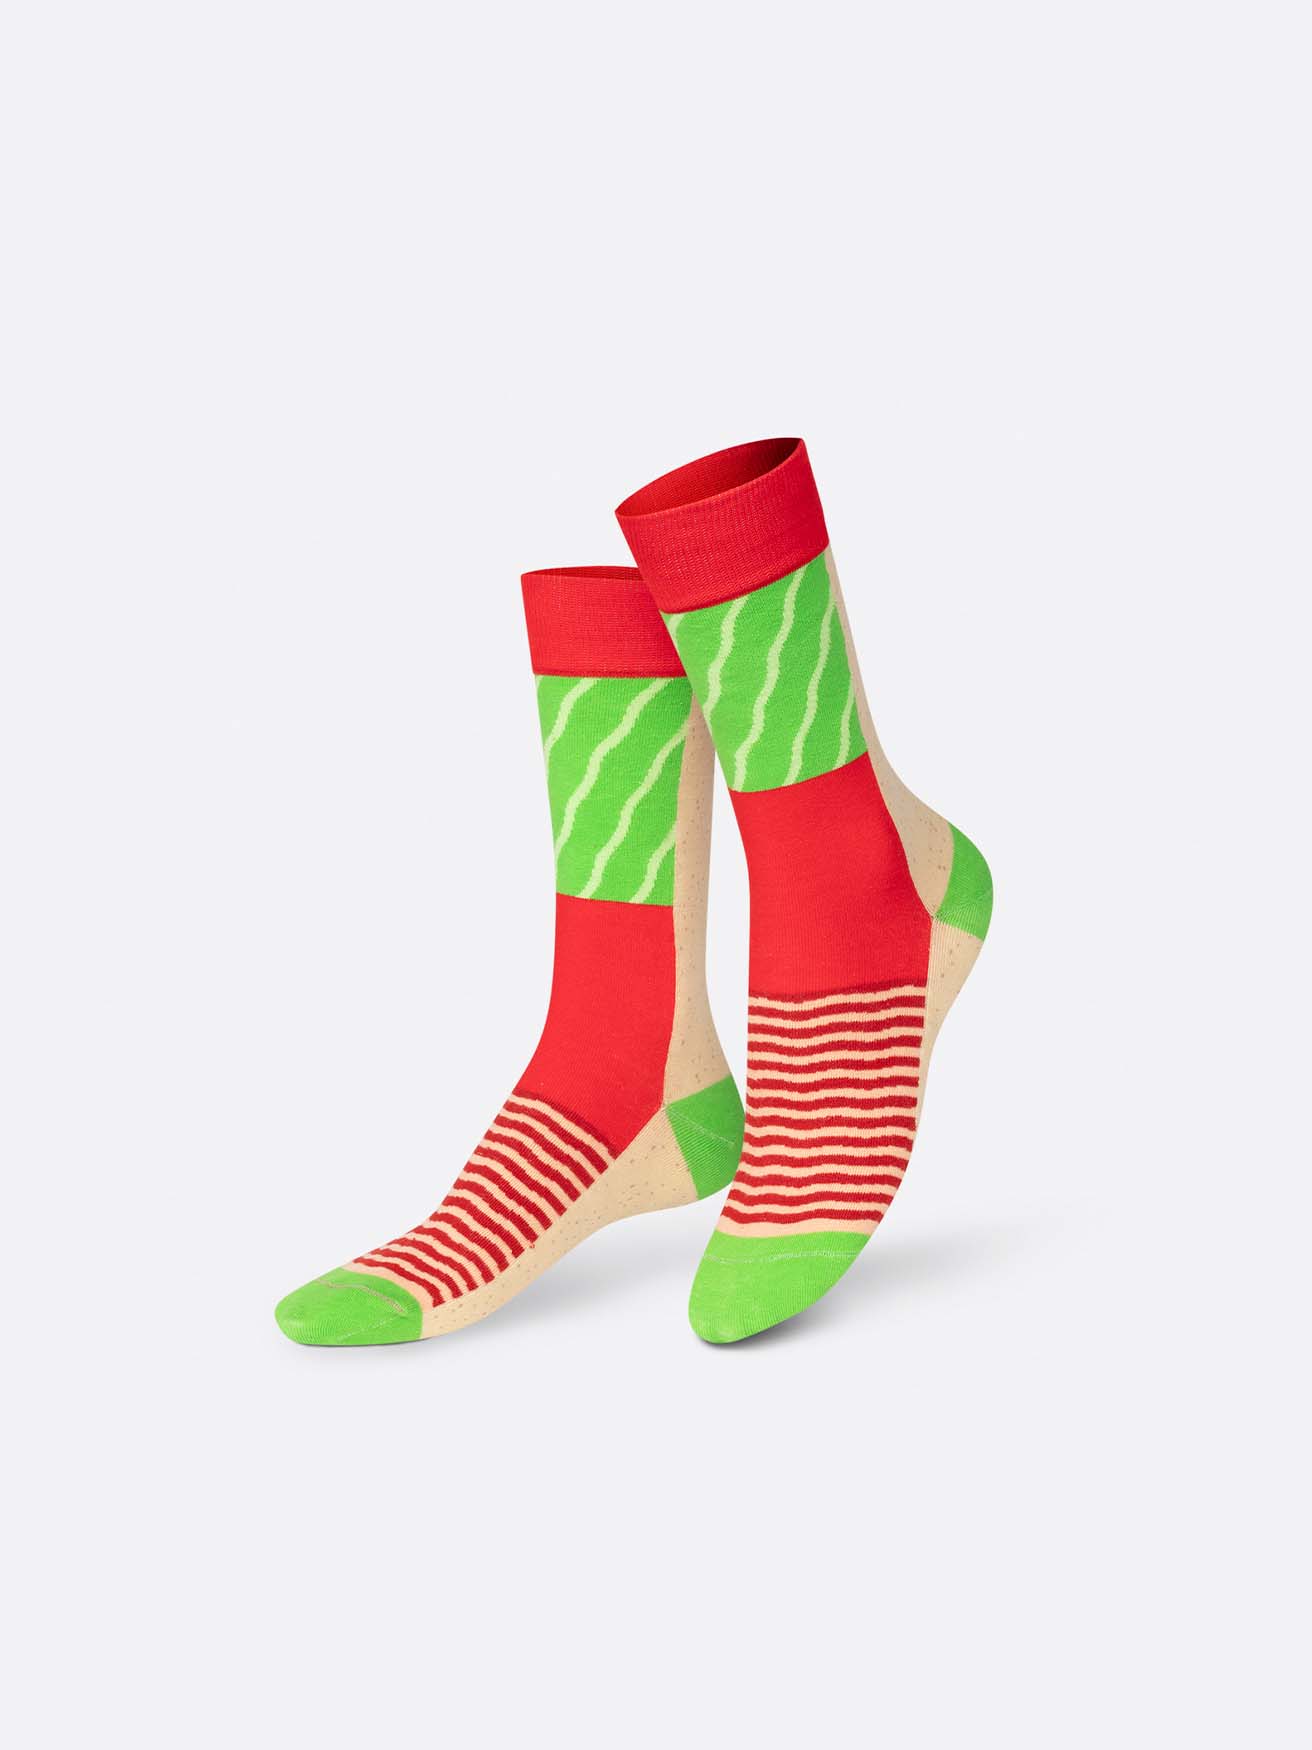 
                  
                    Klassische Blt-Socken
                  
                